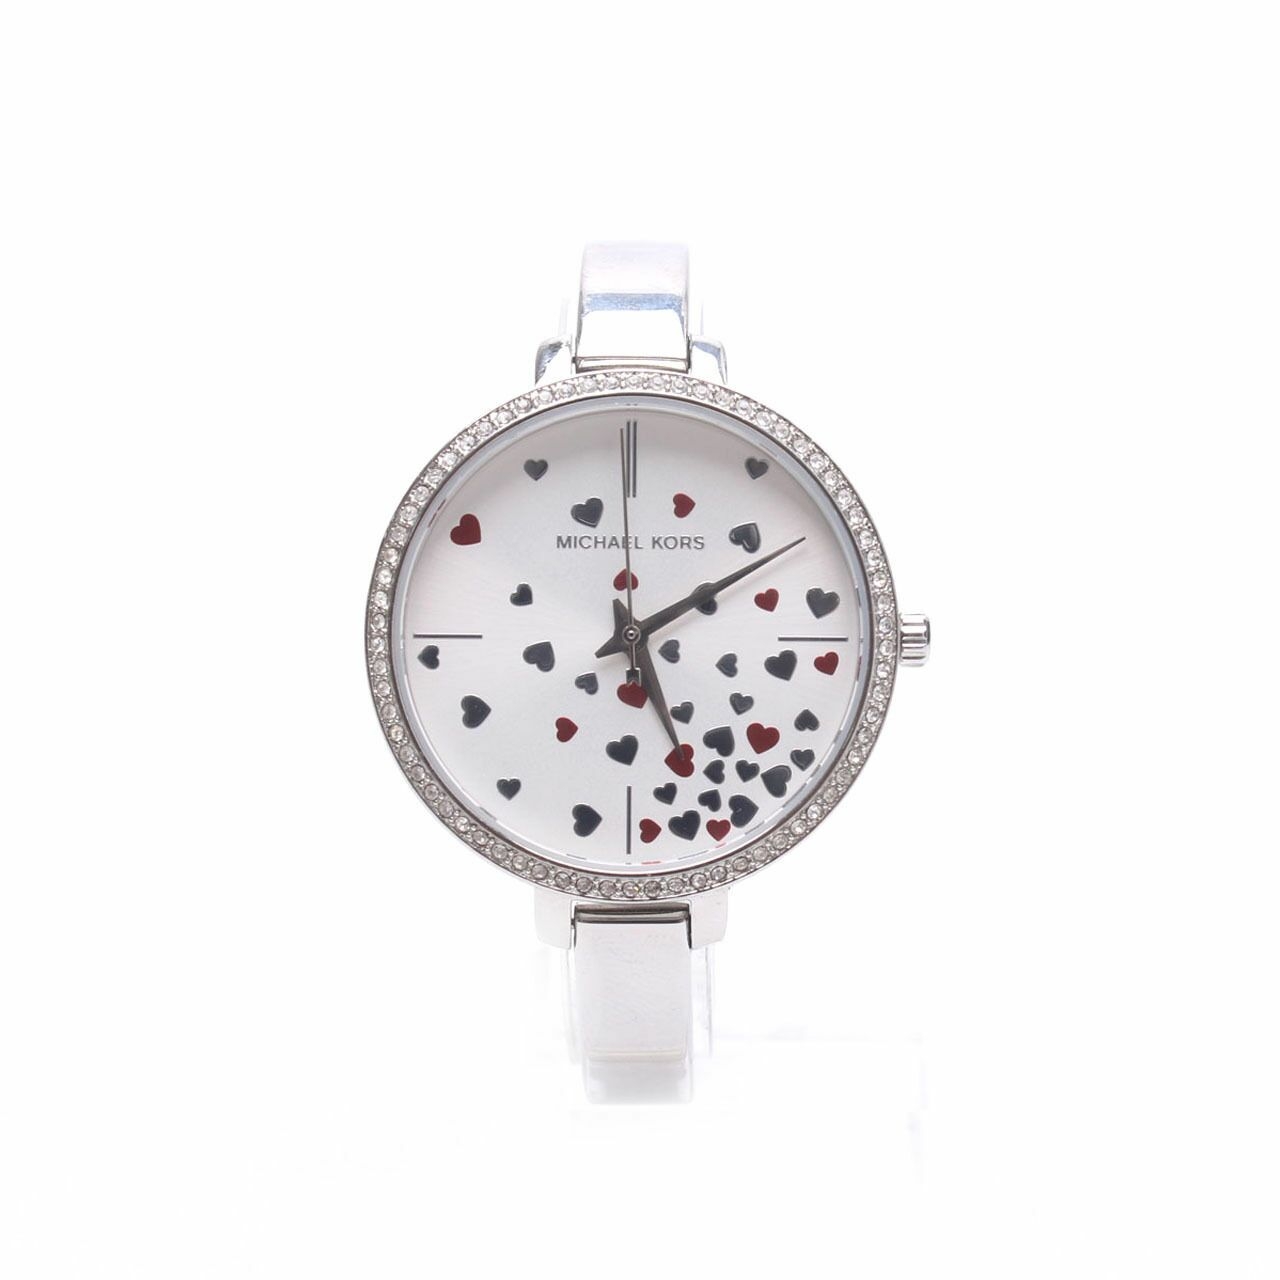 Michael Kors Jaryn Metallic Silver Women's Watch